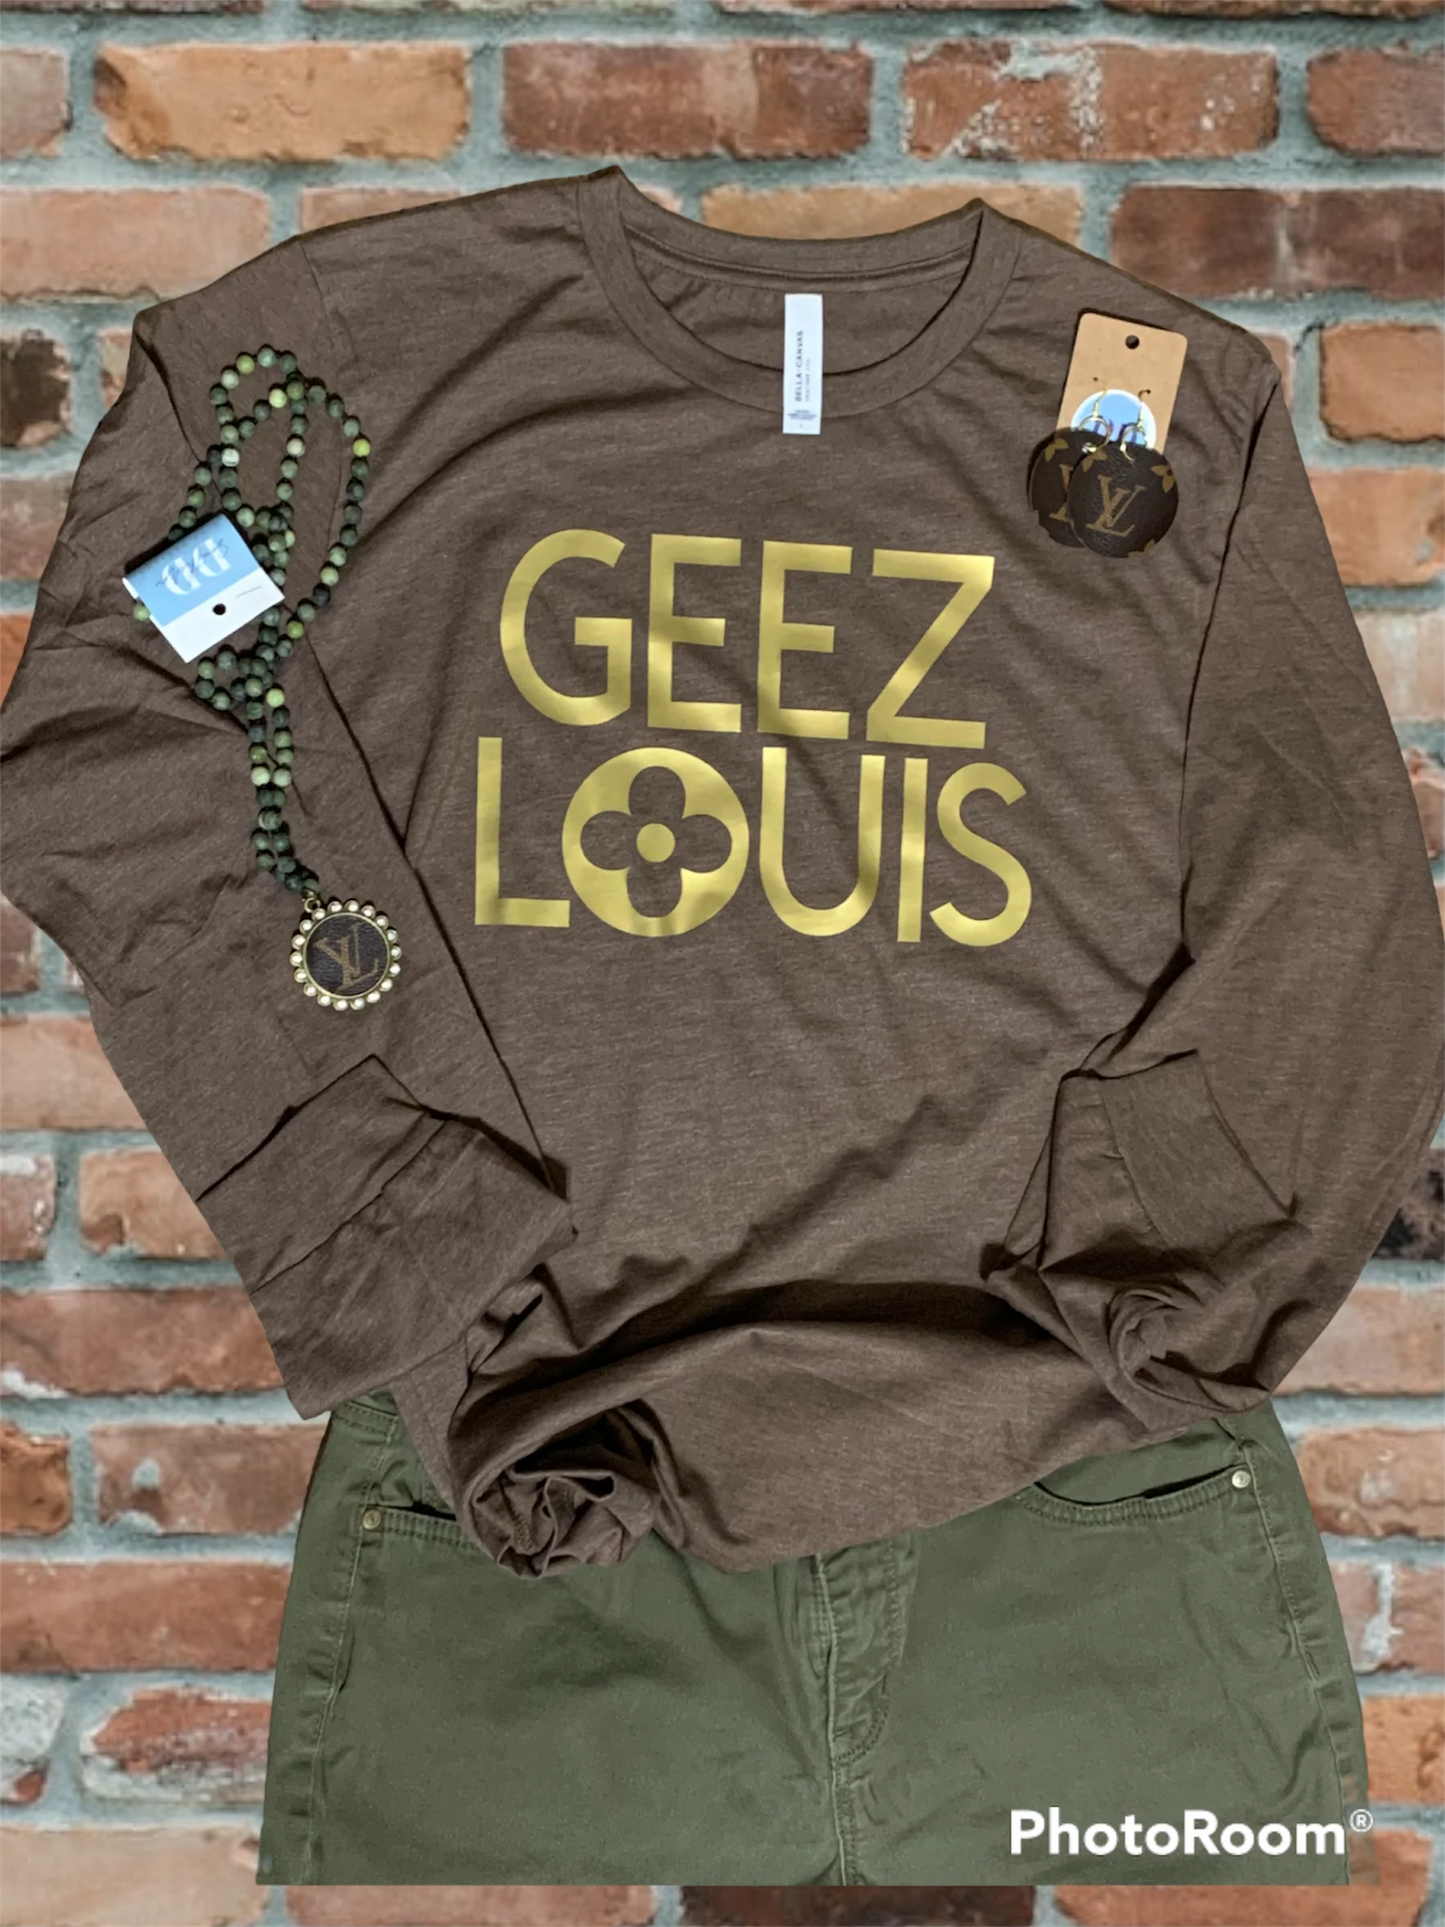 Geez Louis Tee - Long Sleeve